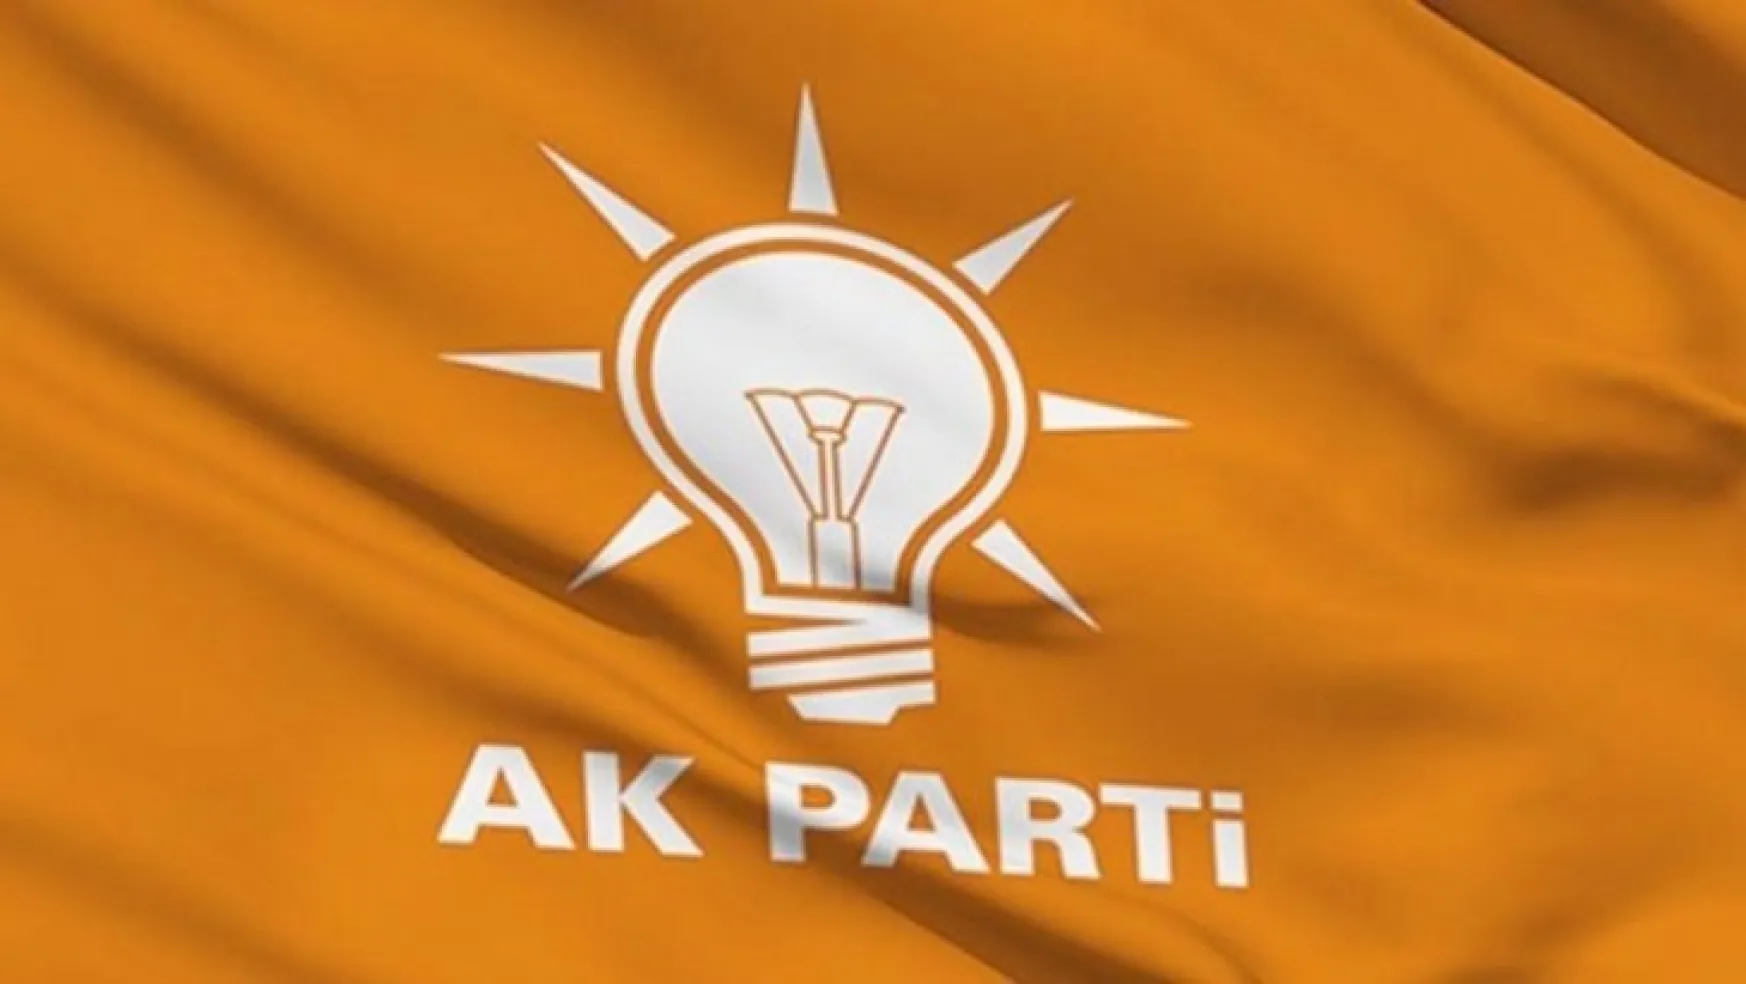 AK Parti: Esnafın çektiği sıkıntının farkındayız, çaba içindeyiz